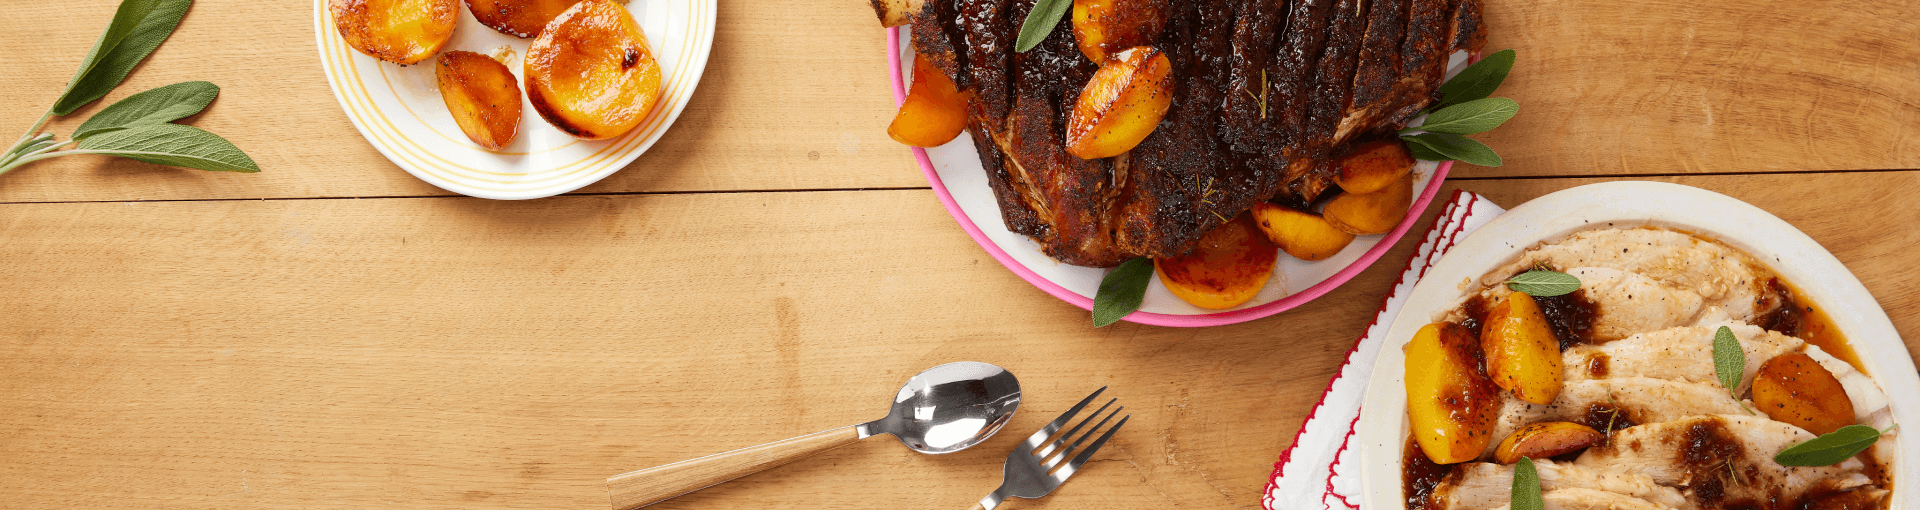 Zanele’s Pork Roast with Peaches